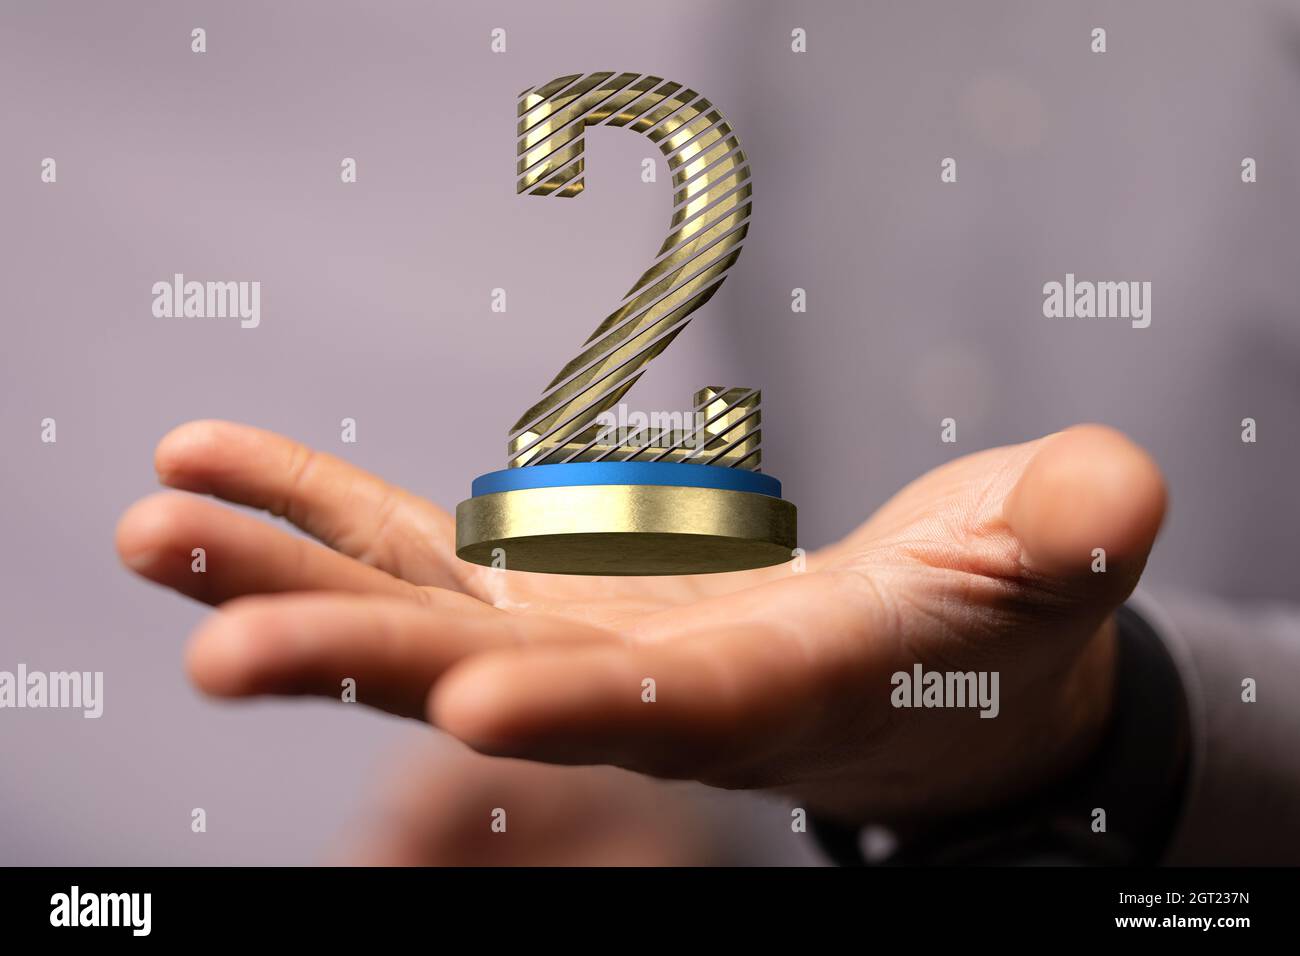 3D-Rendering der Nummer 2 schwebend auf menschlichen Händen – Konzept für den 2. Platz Stockfoto